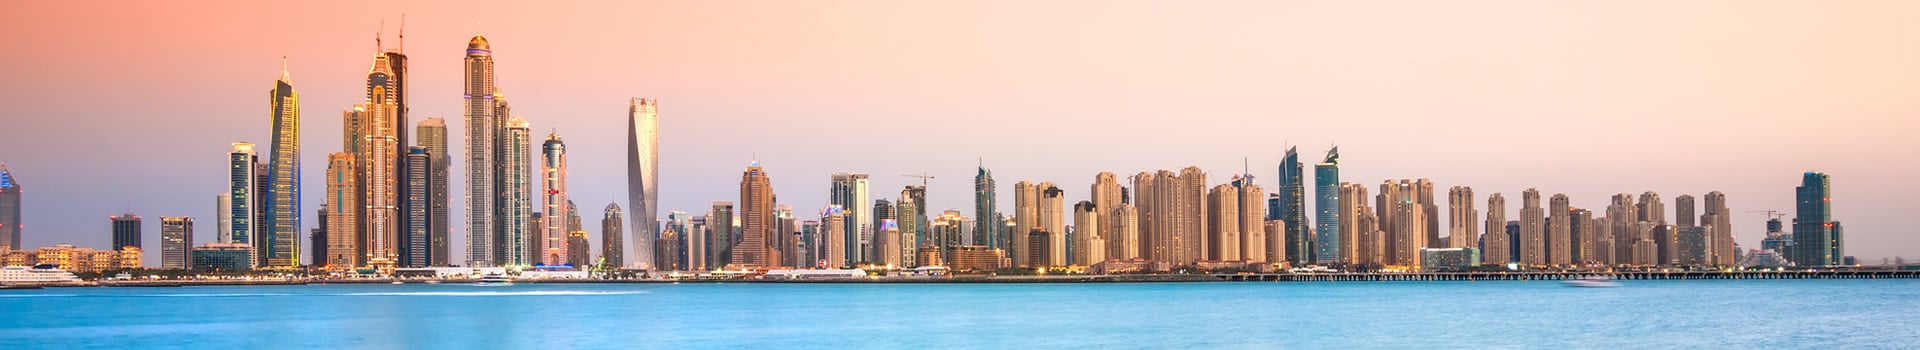 Luanda - Dubai